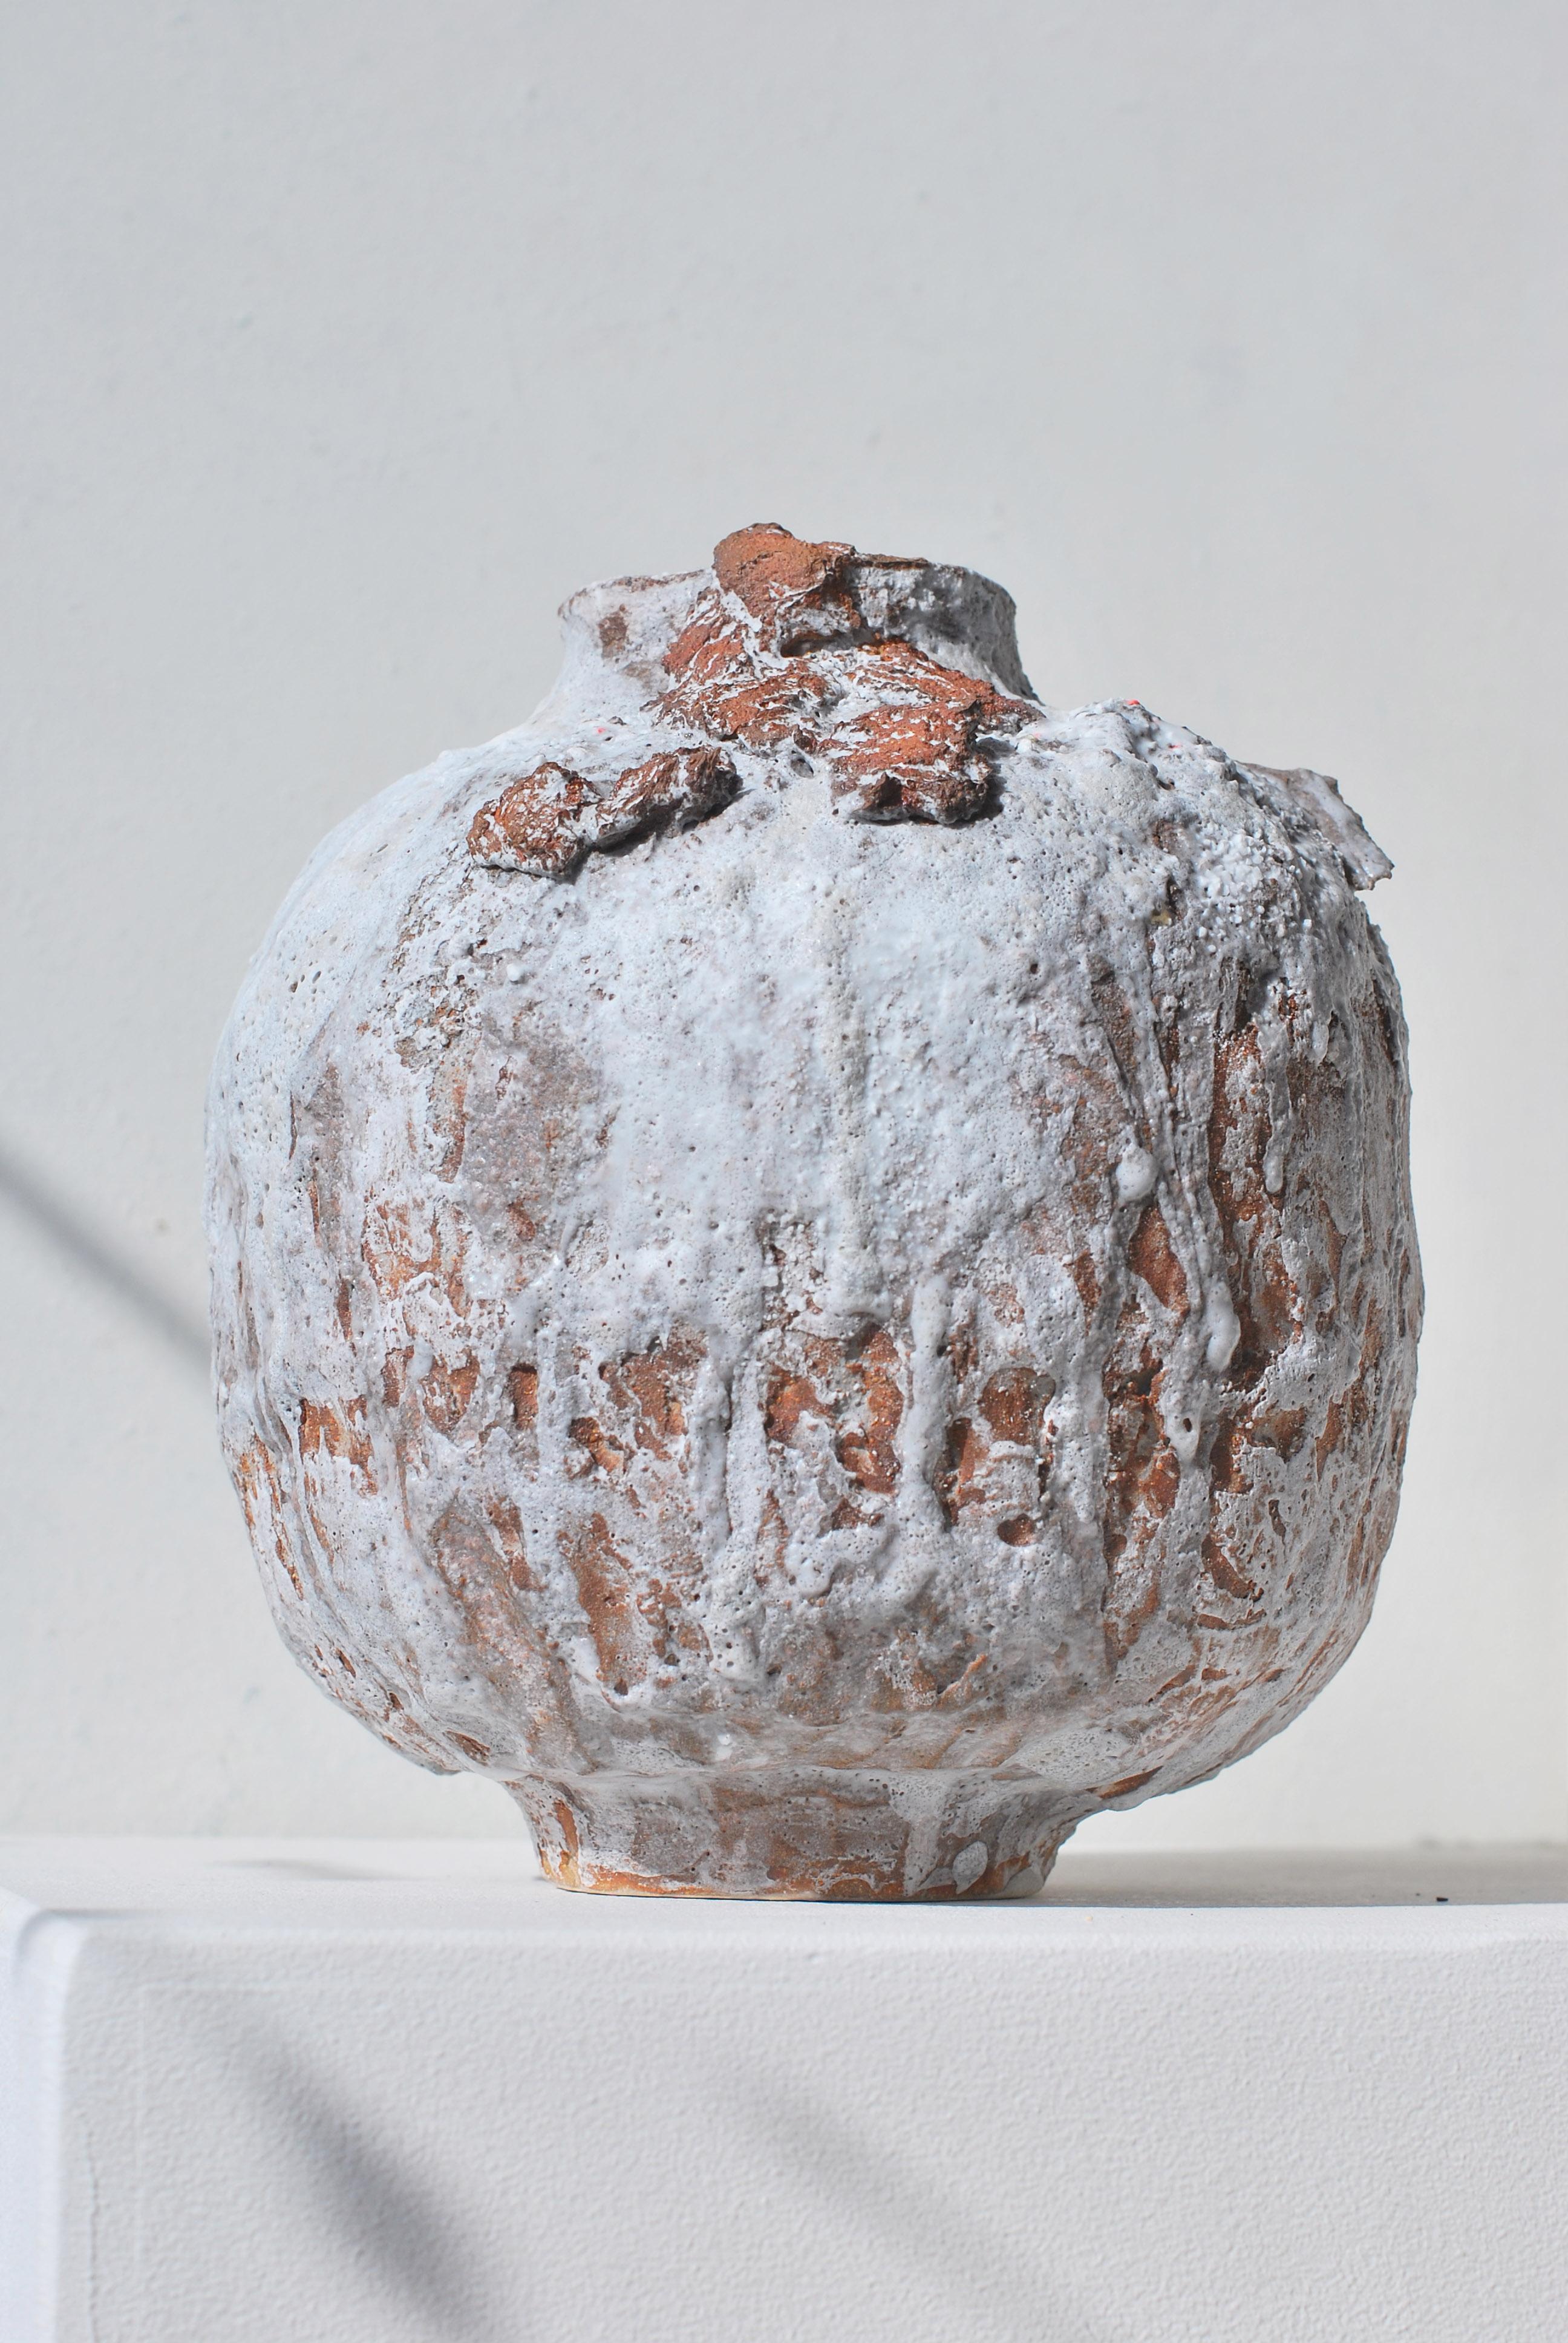 Vase en grès Moon de Moïo Studio
Pièce unique
Dimensions : L 17 x D 17 x H 18 cm
MATERIAL : Glaçure blanche et porcelaine sur grès fauve

Moïo Studio est le studio d'art céramique basé à Berlin de l'artiste franco-palestinienne Maia Beyrouti. Il a